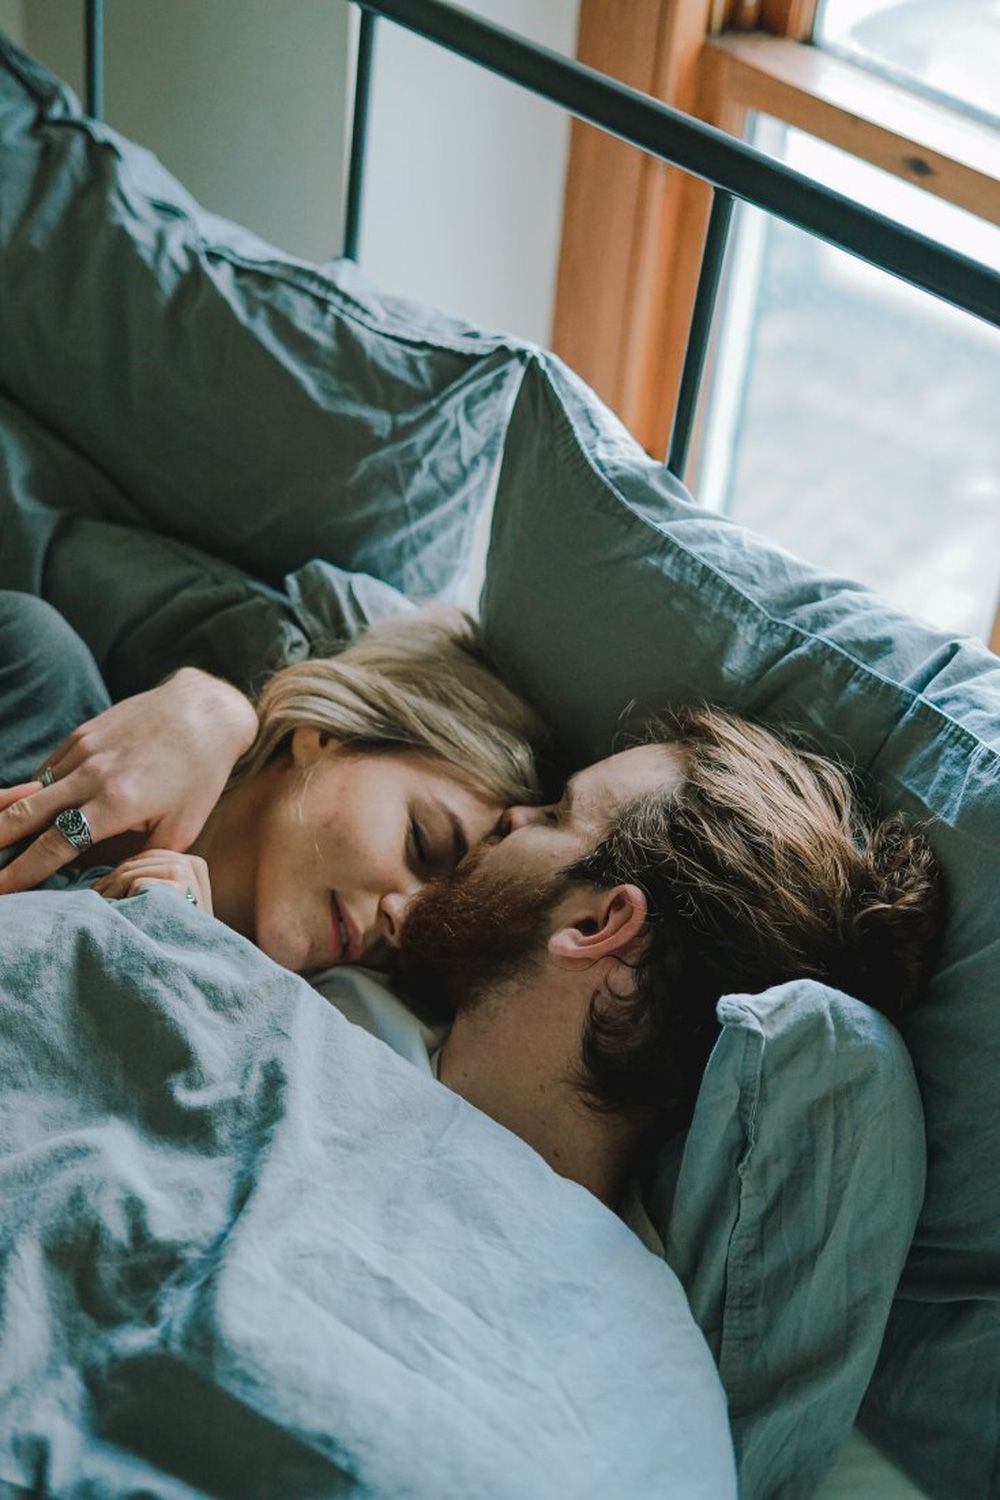 5 lợi ích khi ngủ khỏa thân: Mùa hè là thời điểm thích hợp để làm, tốt cho cả nam và nữ